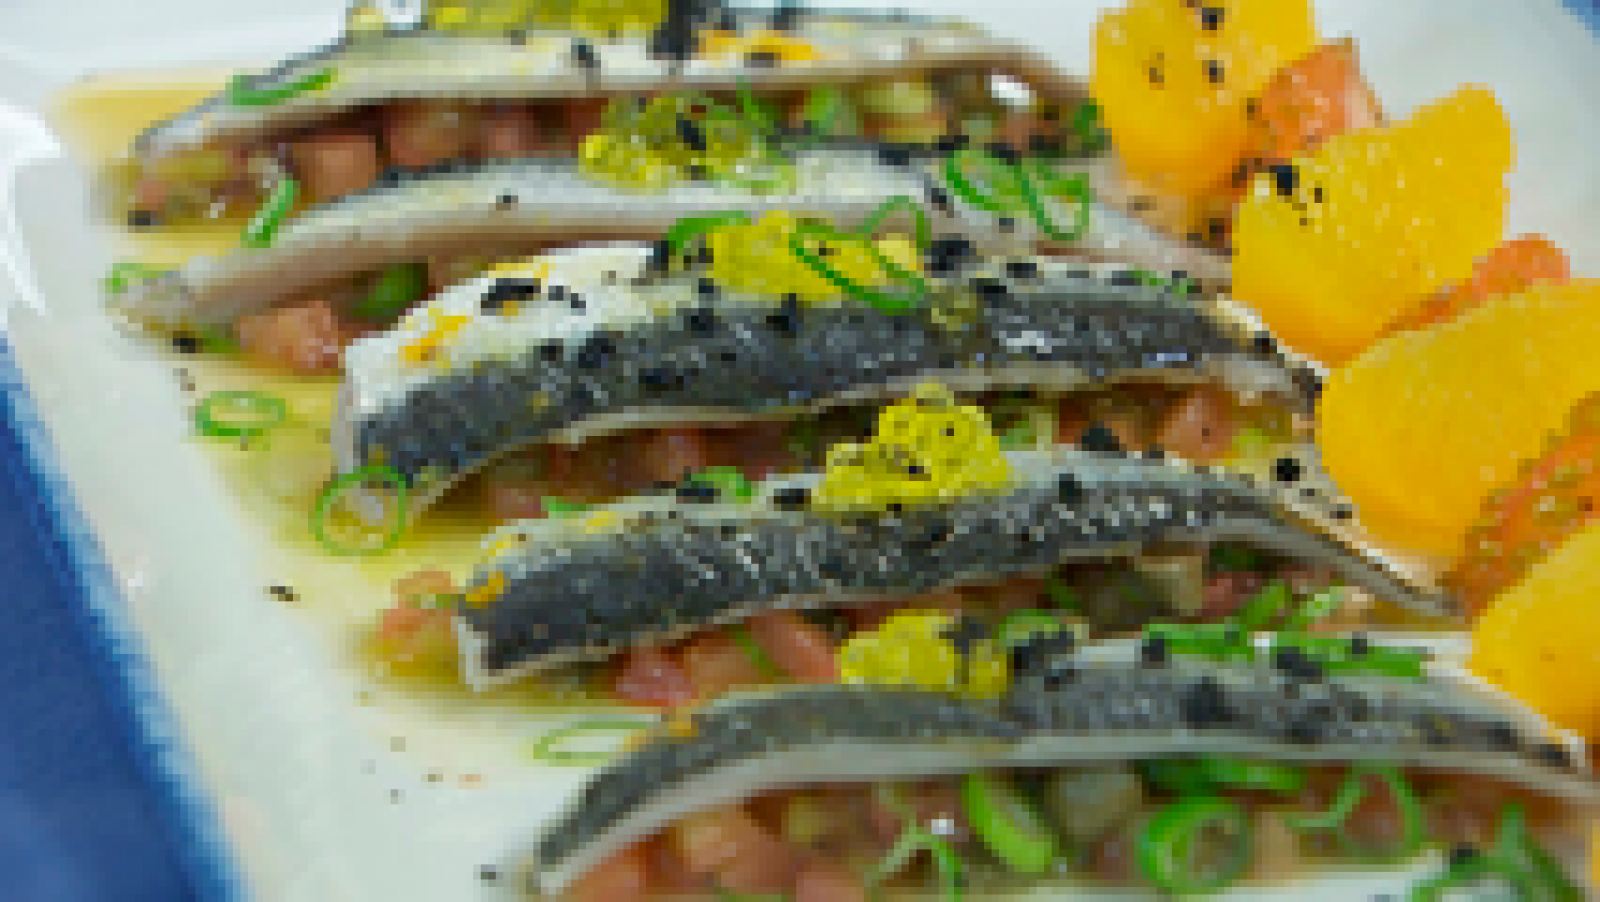 Torres en la cocina - Ensalada de sardinas y naranja 